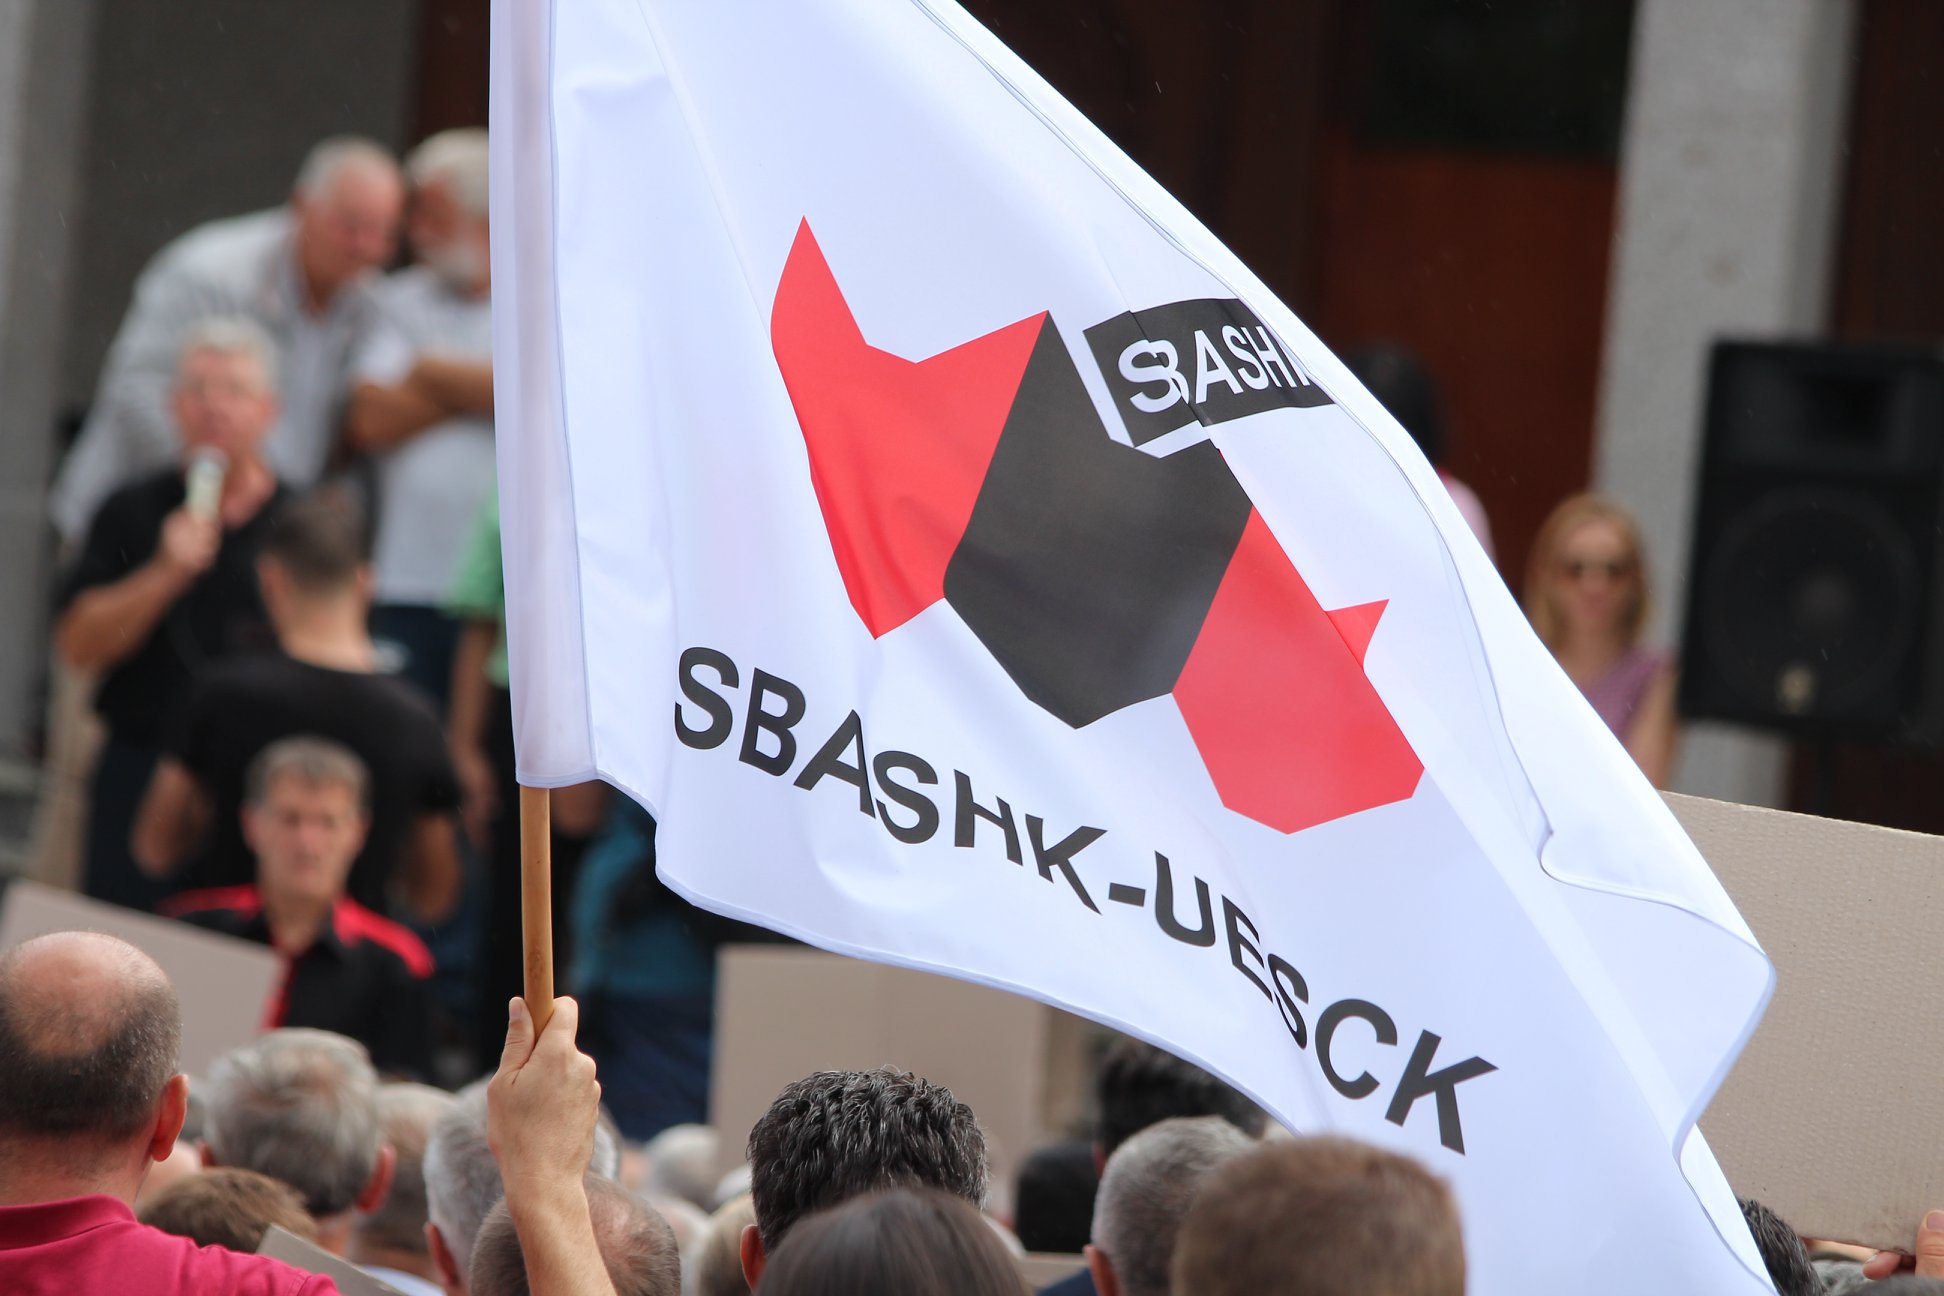 SBAShK-u publikon agjenden e protestës së nesërme